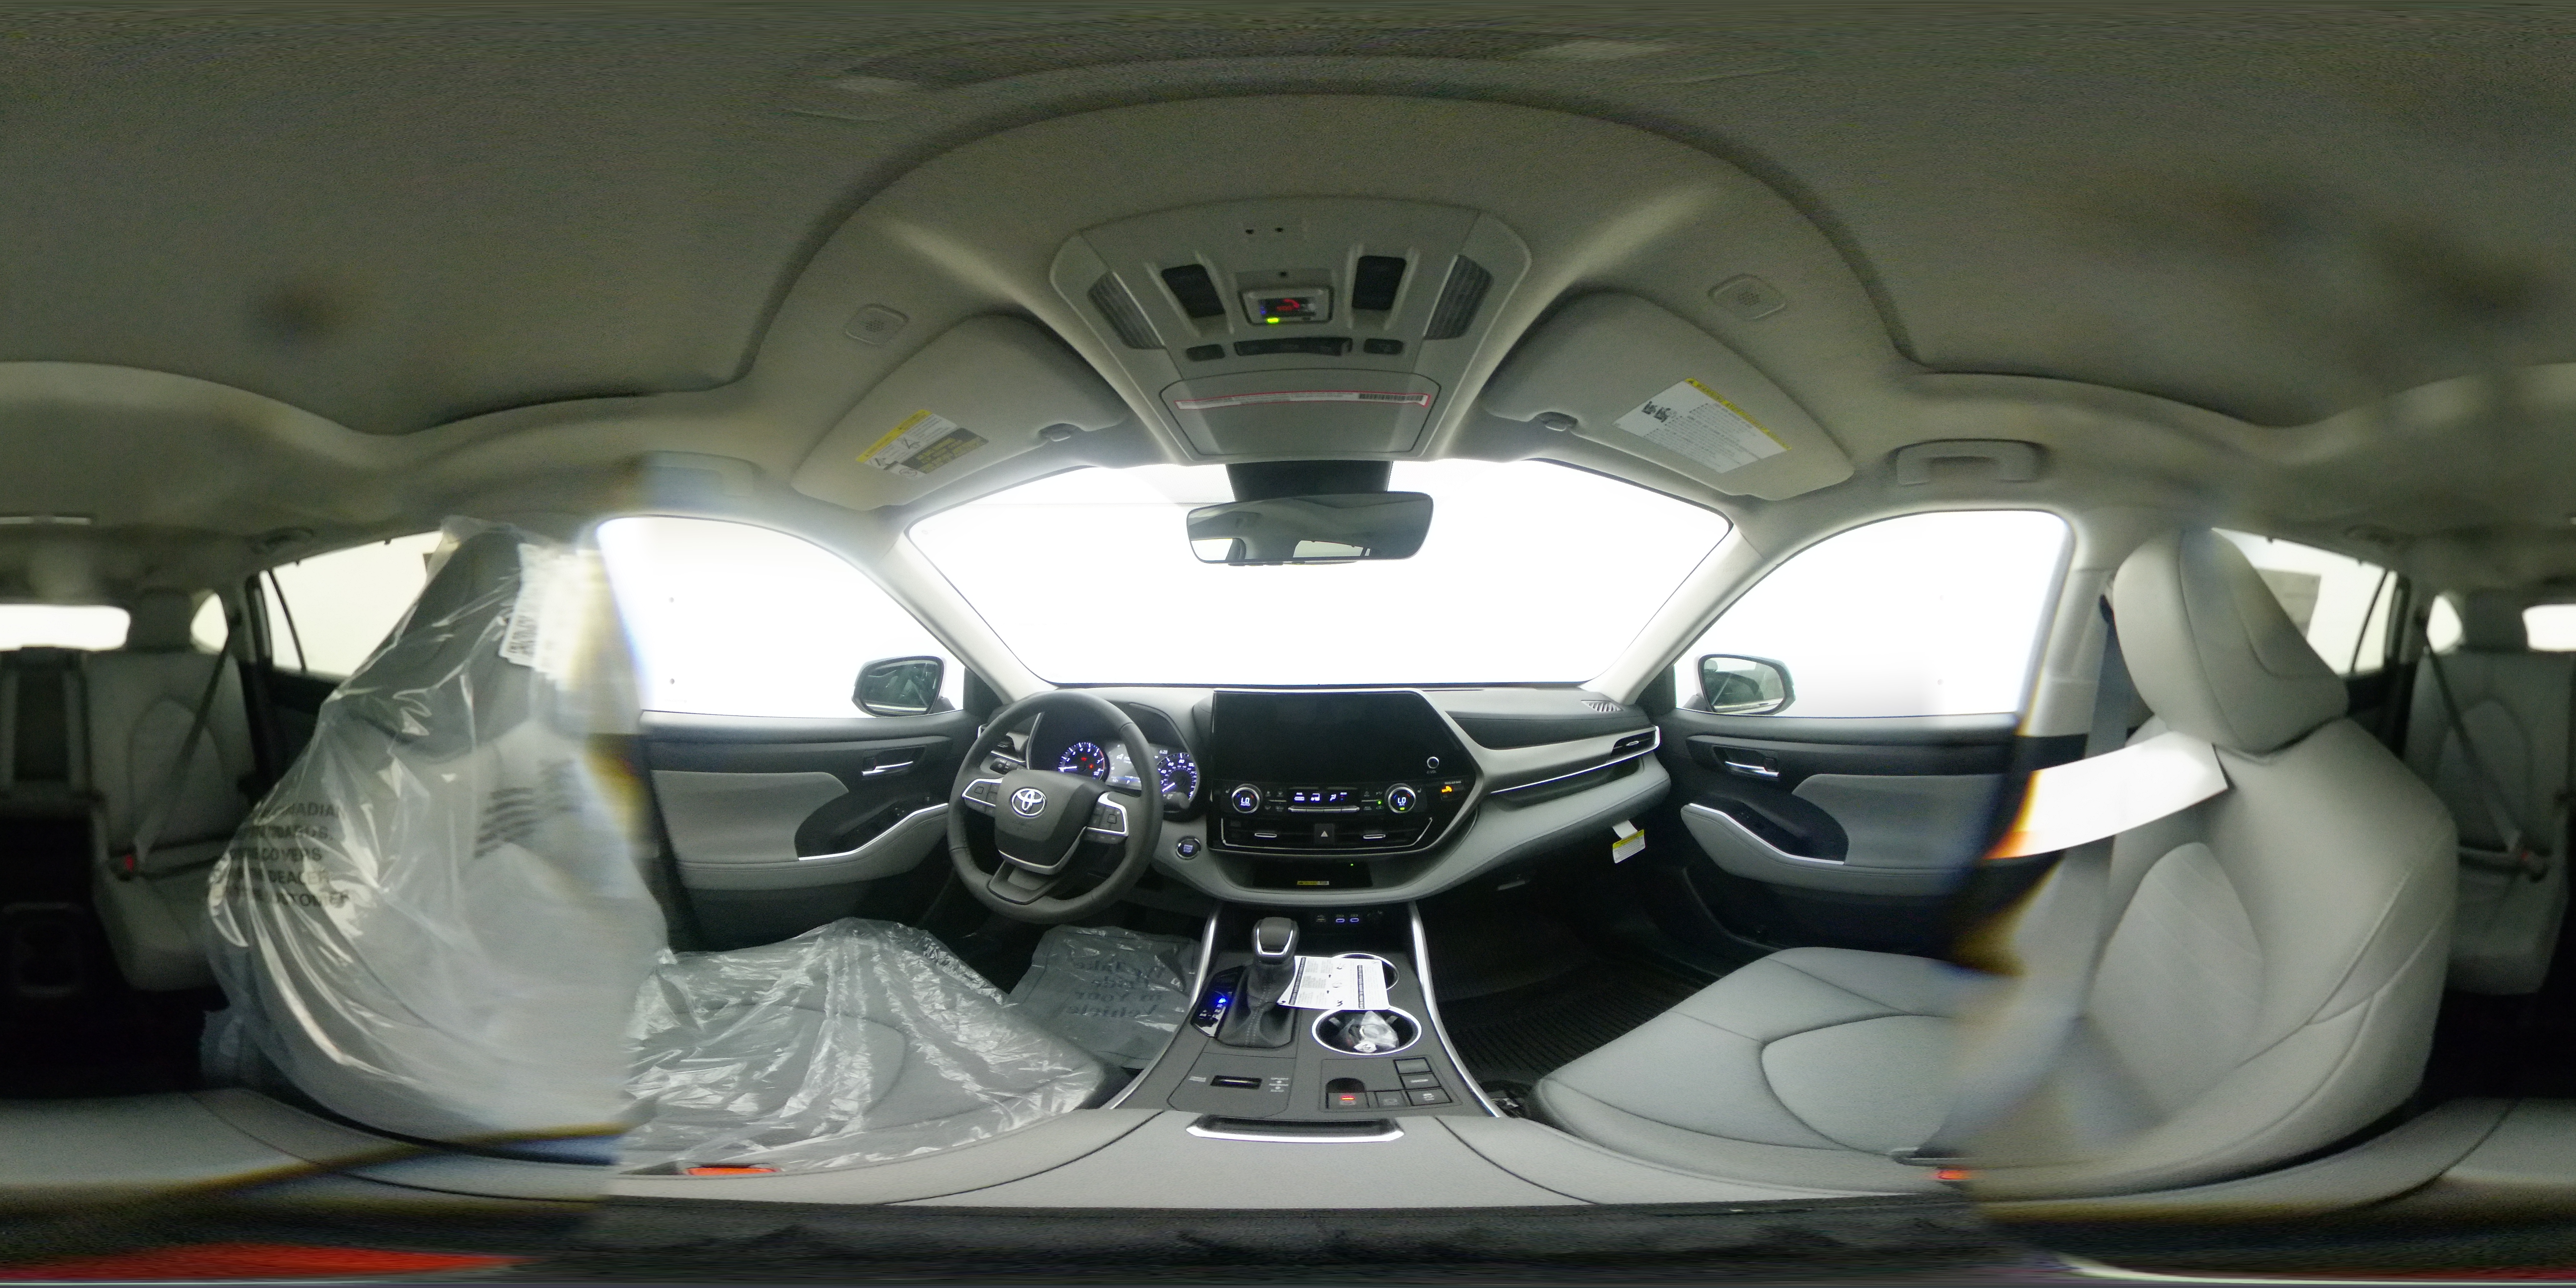 New 2023 CELESTIAL SILVER METALLIC Toyota XLE 360 Panorama 1